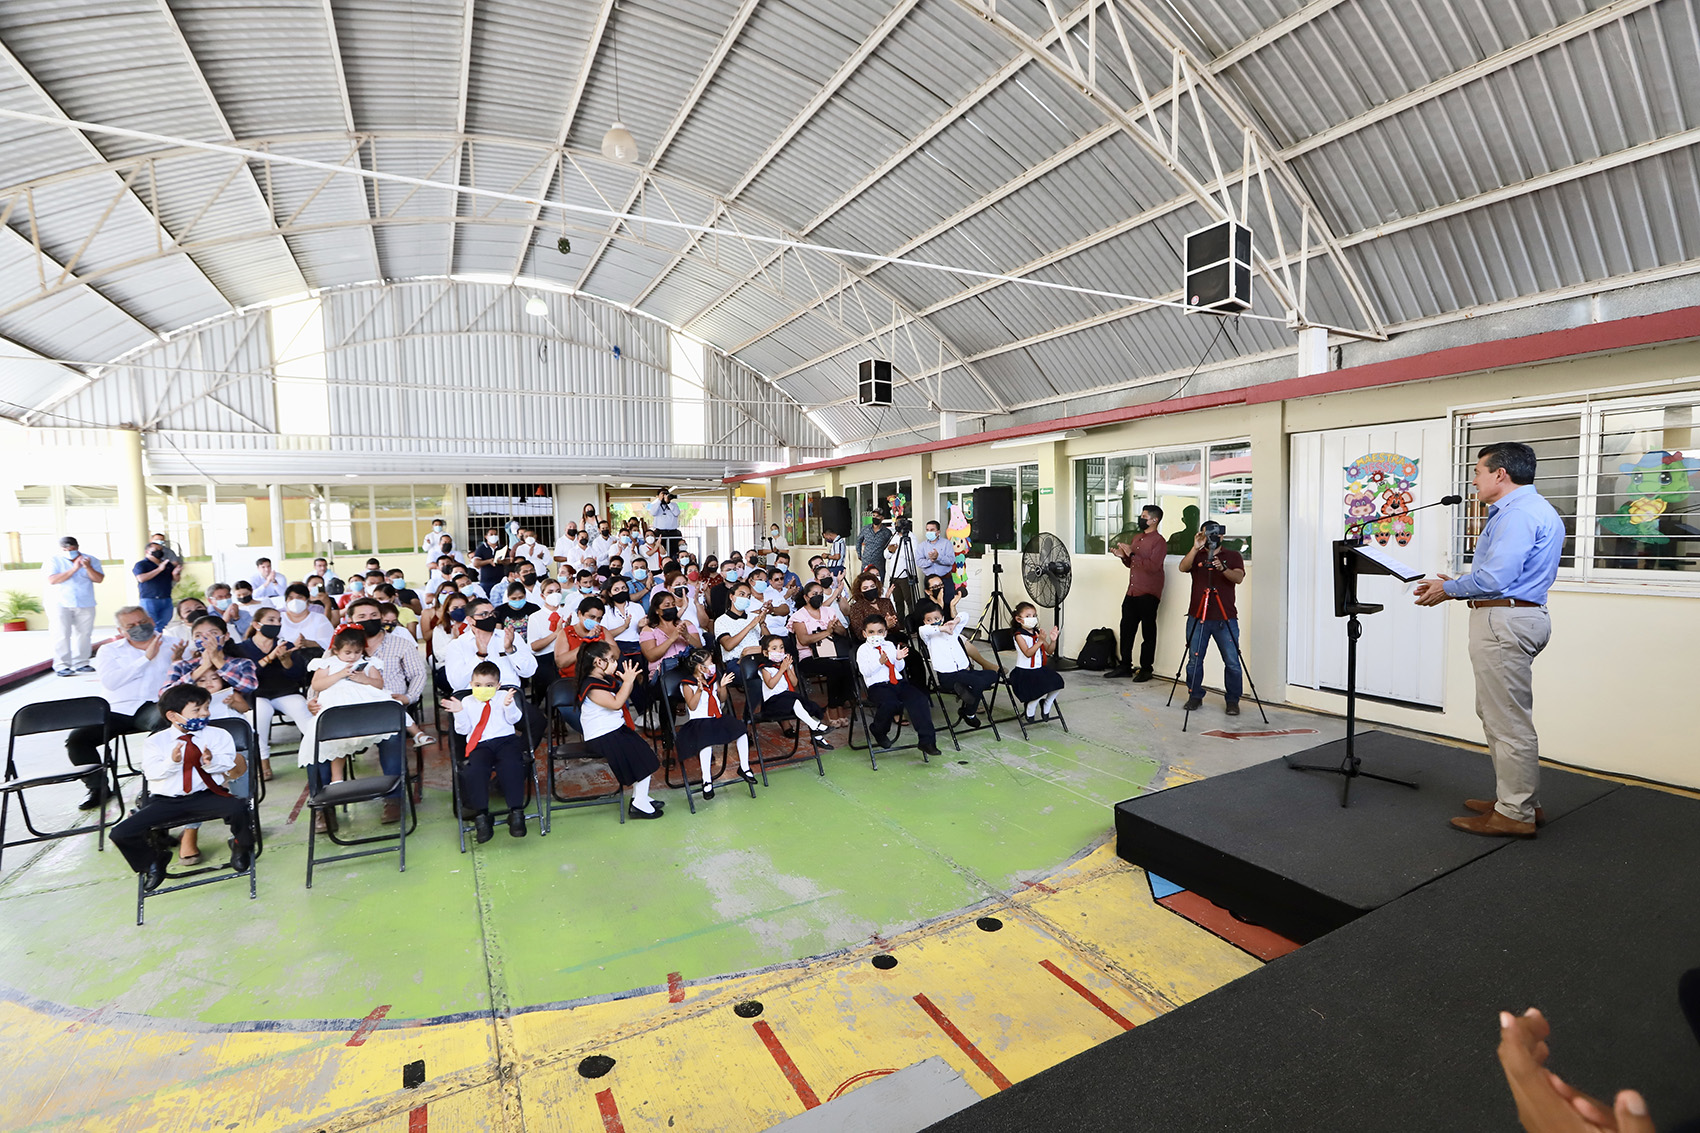 En Chiapa de Corzo, inaugura Rutilio Escandón reconstrucción y rehabilitación del preescolar “María de Angulo”